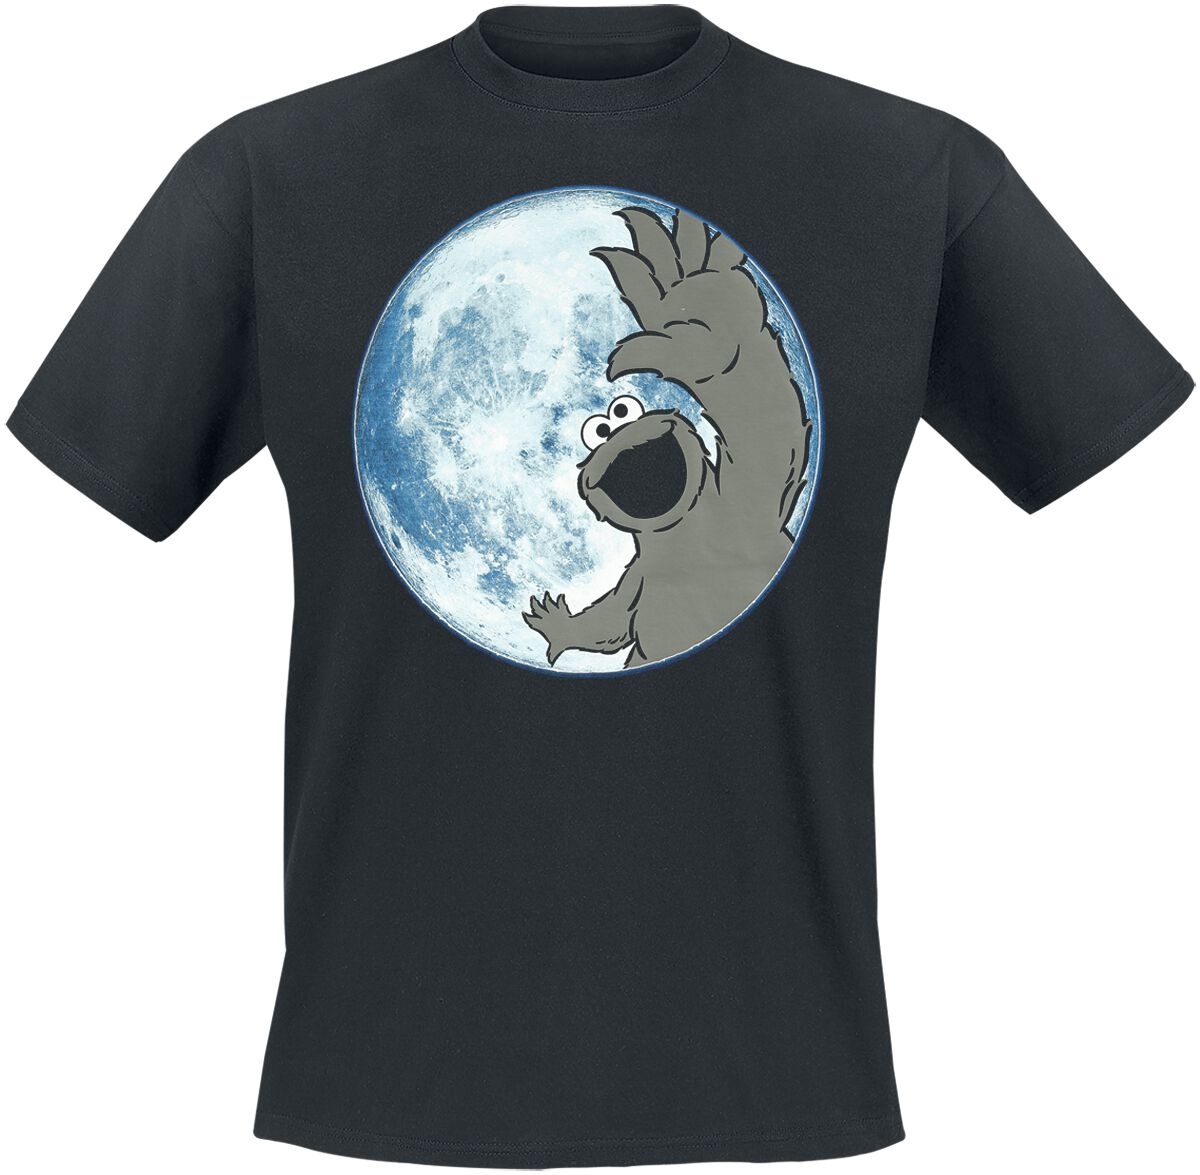 Sesamstraße T-Shirt - Moon - Cookie Monster - S bis 3XL - für Männer - Größe 3XL - schwarz  - EMP exklusives Merchandise!